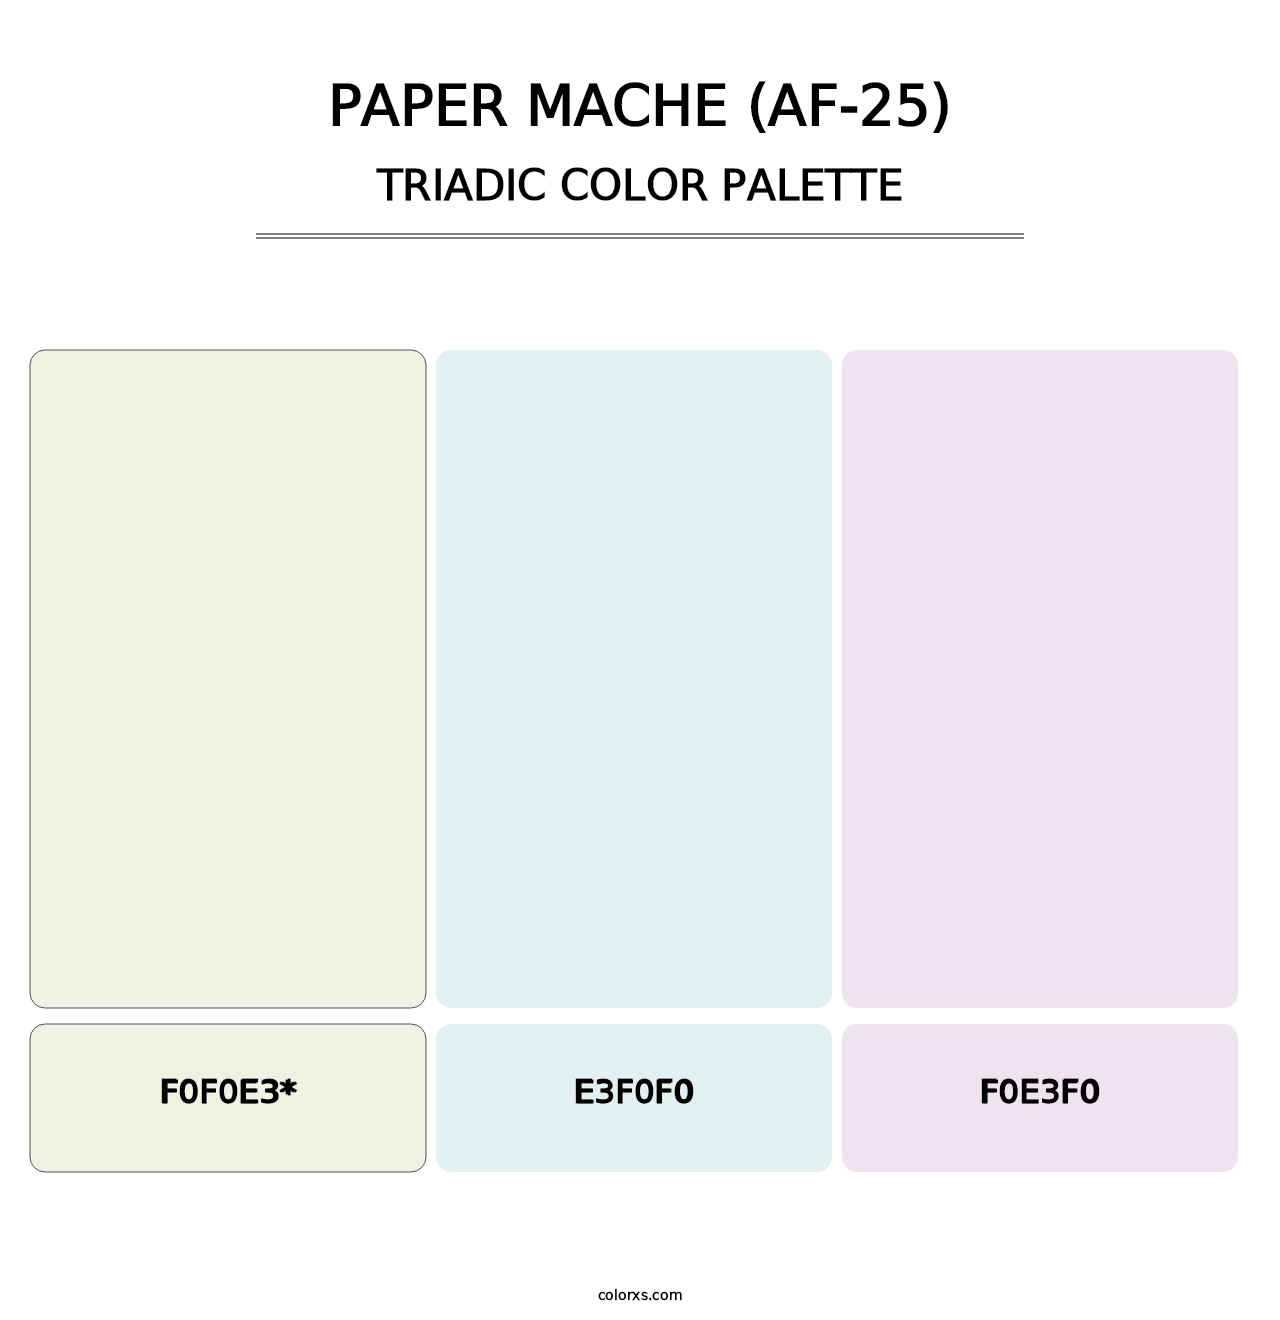 Paper Mache (AF-25) - Triadic Color Palette